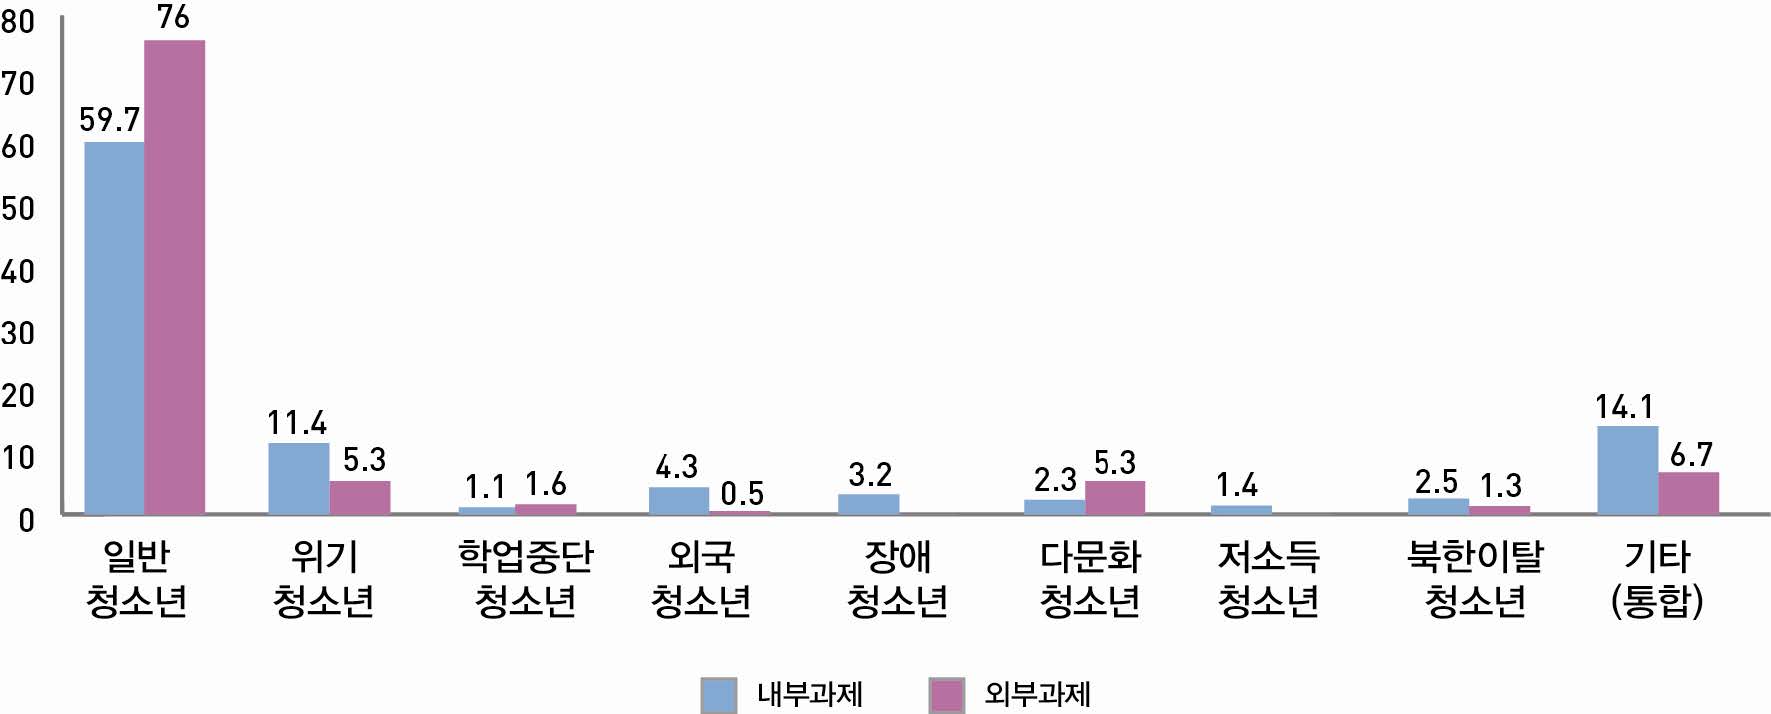 【그림 Ⅲ-20】연구유형별 조사대상 청소년 집단 비율